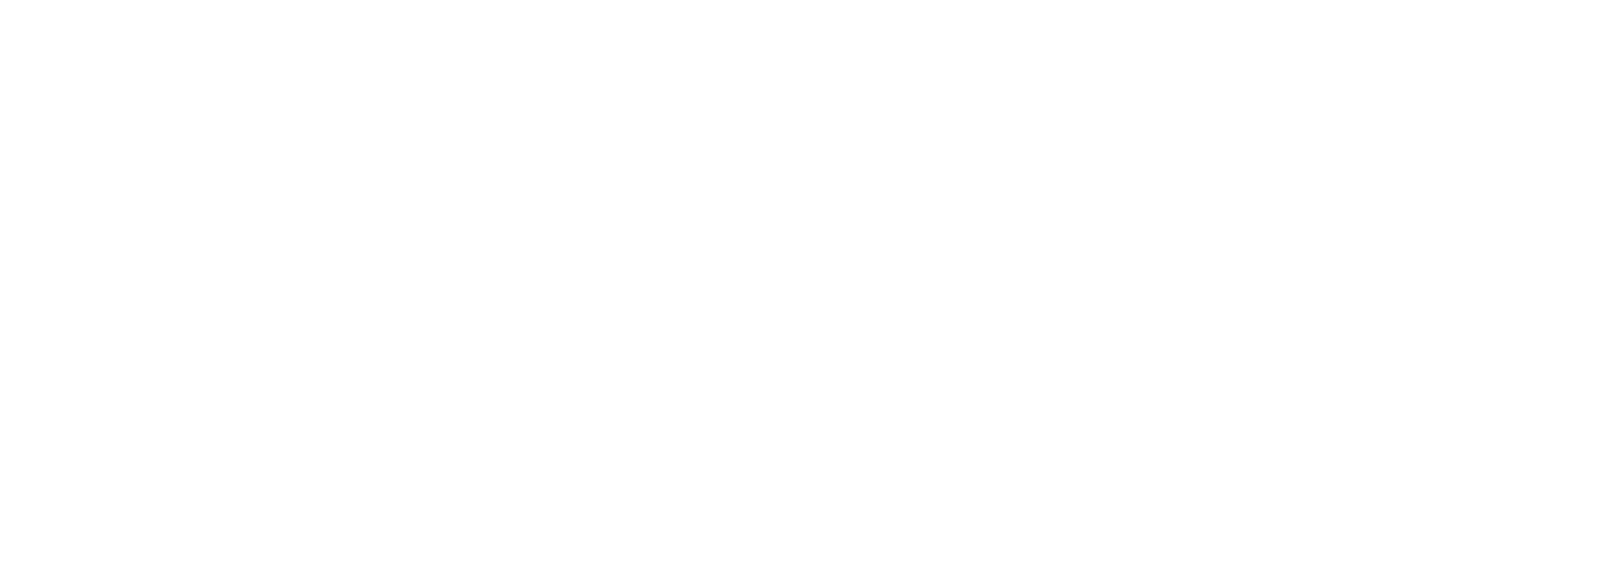 OP Bancorp (Open Bank) logo pour fonds sombres (PNG transparent)